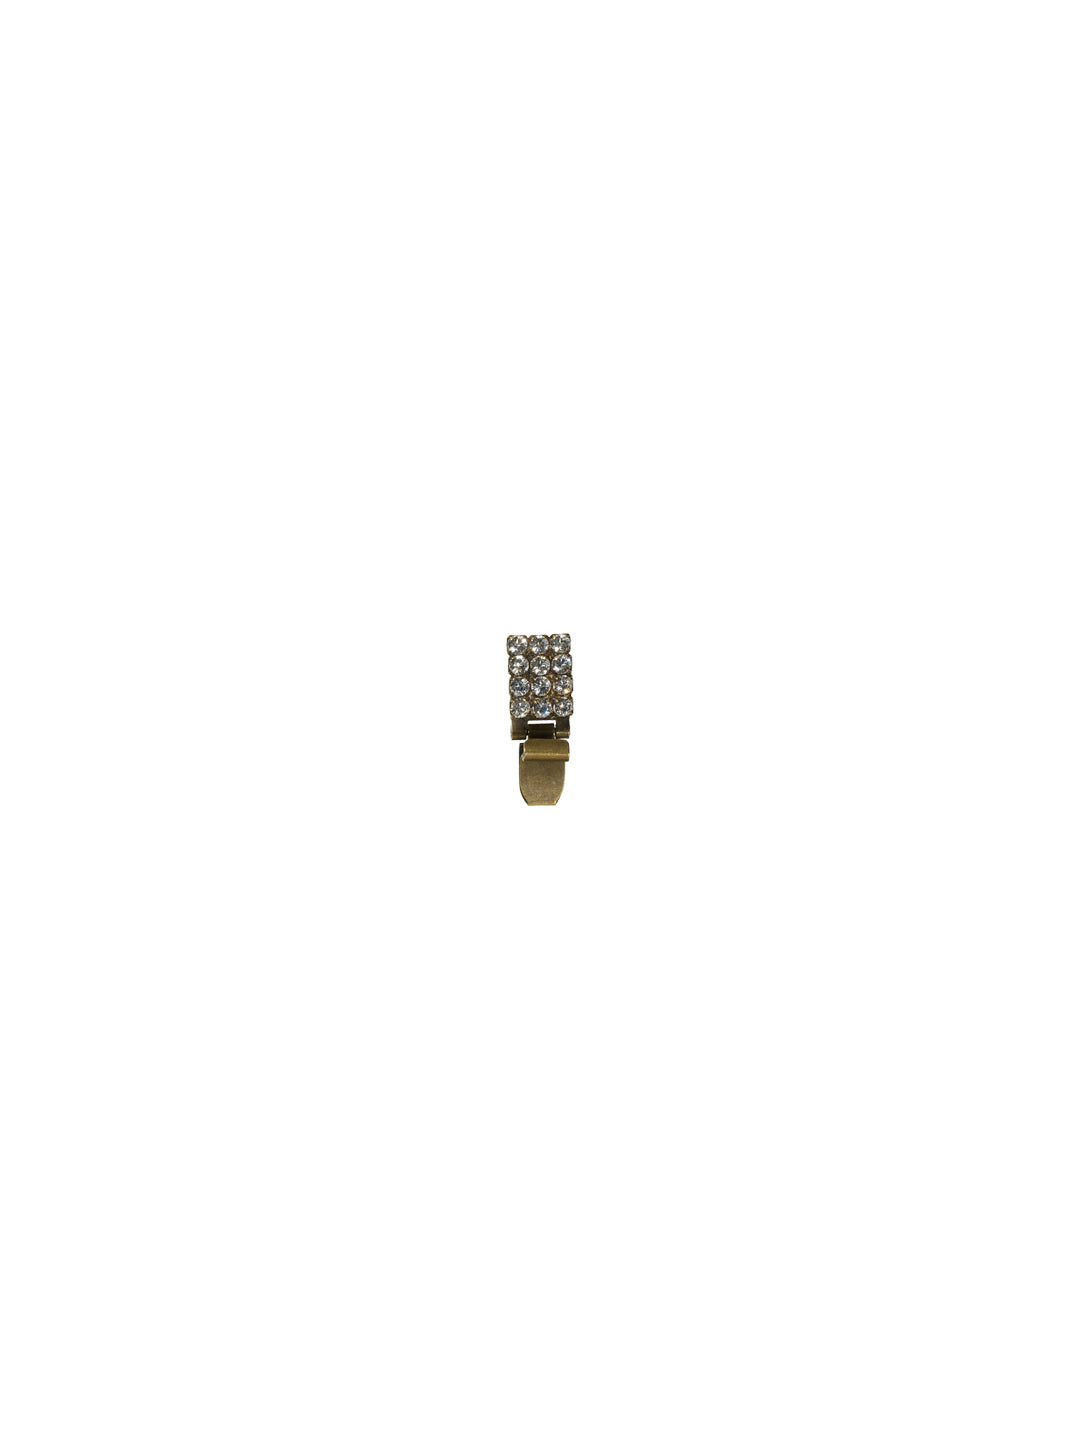 Bracelet Extender - EXTB2AG - <p>Bracelet Extender Type 2Antique Gold-tone finish</p>